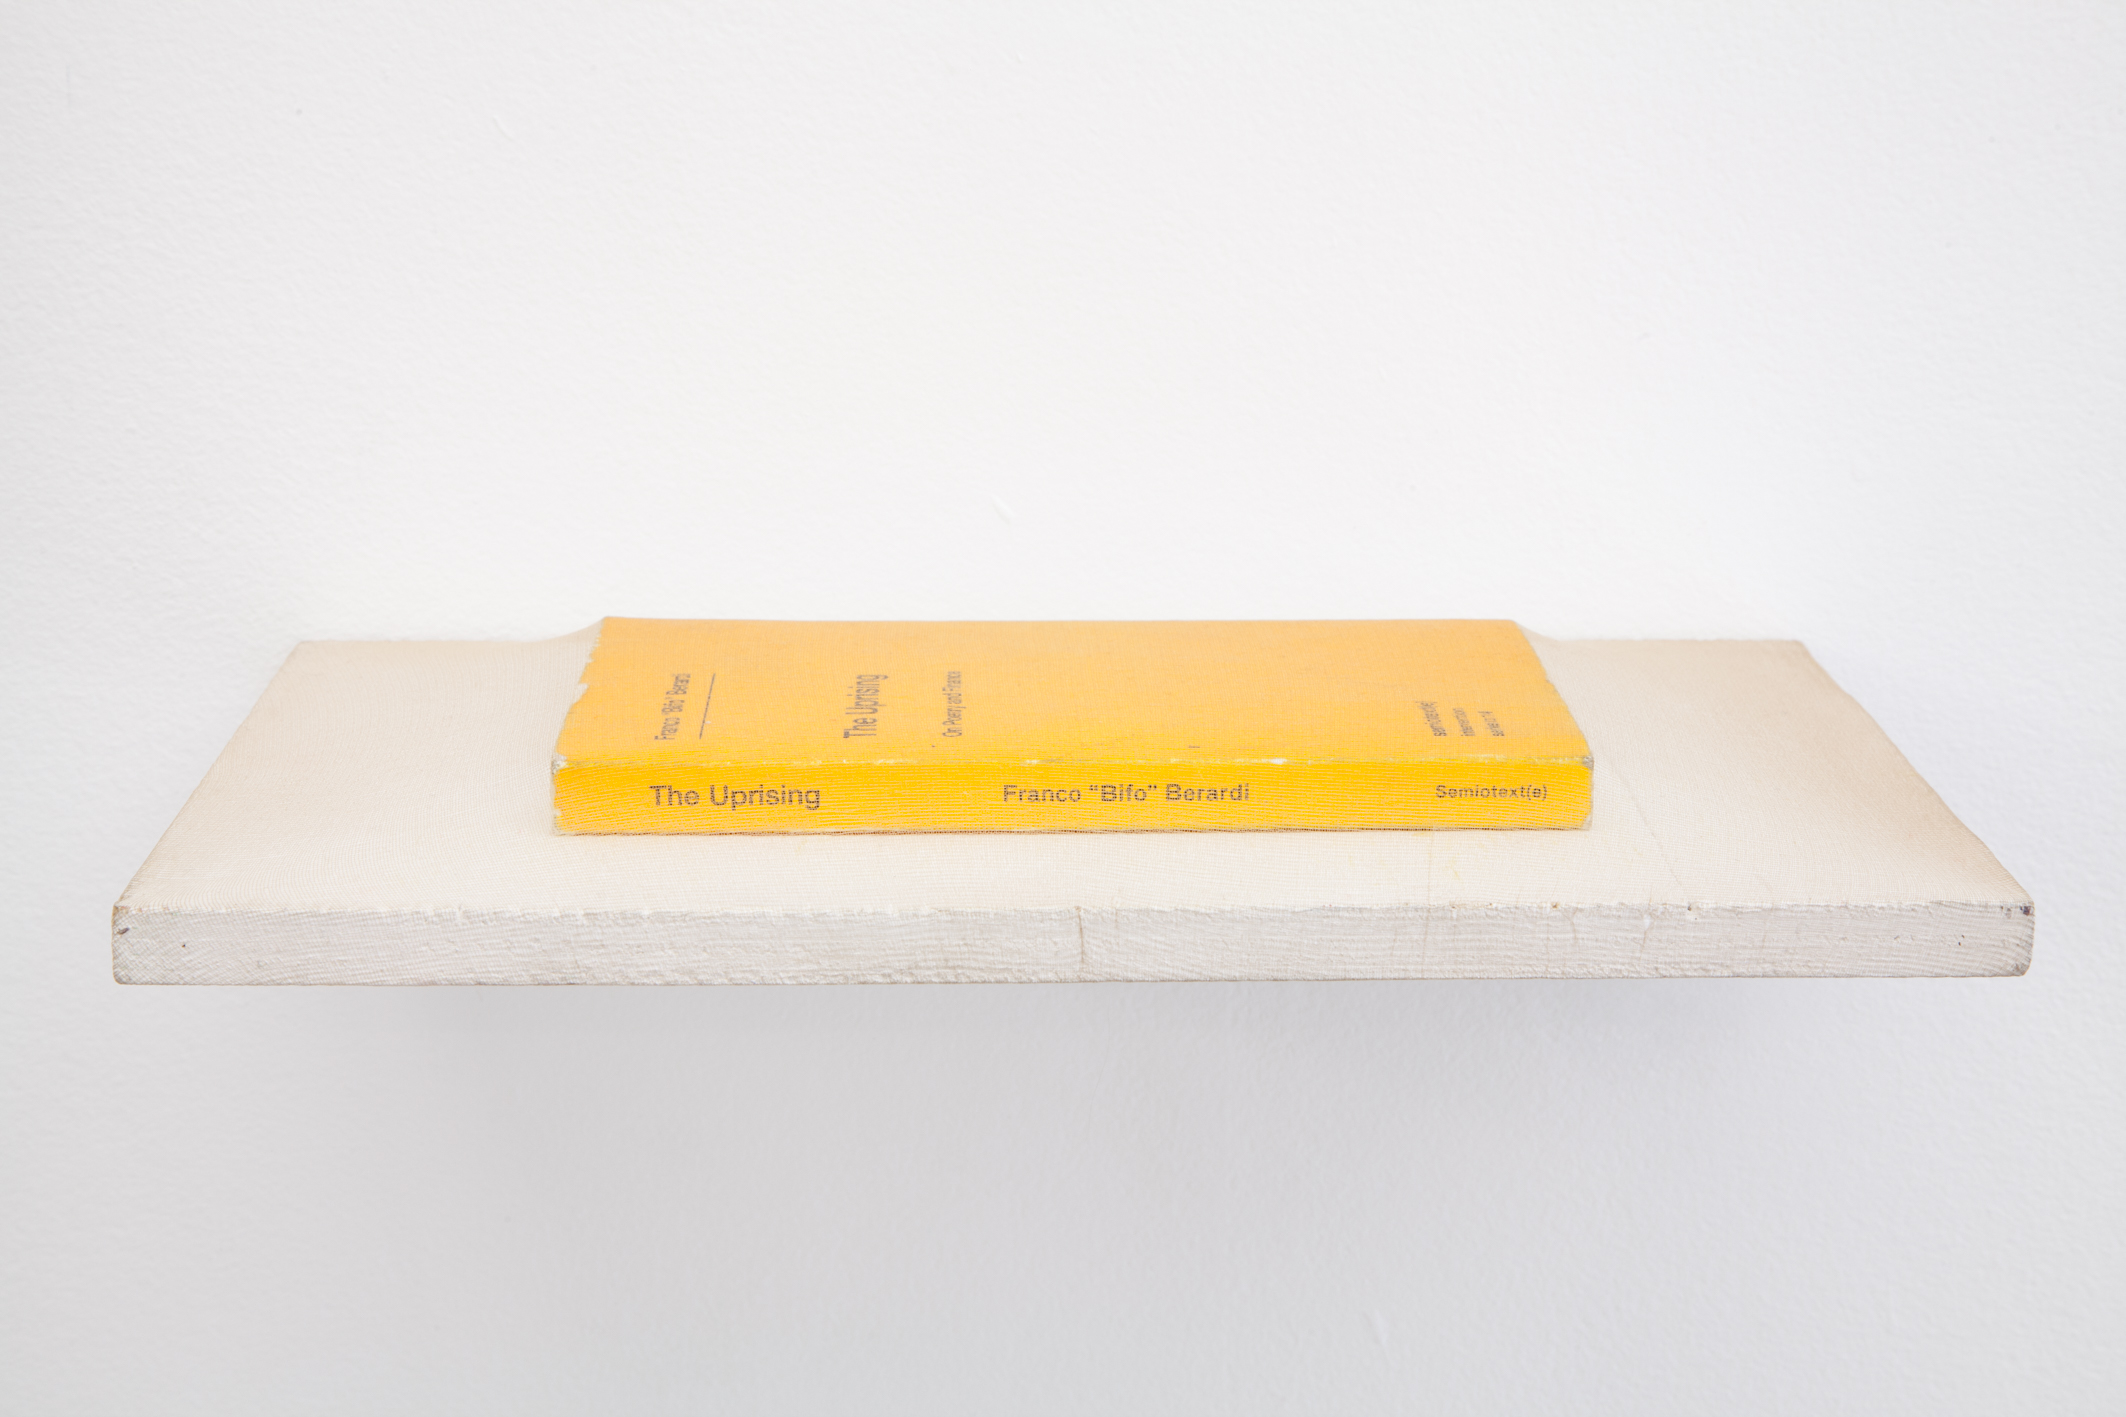 Hana Earles, “Ultimate Swayed”, 2015, book, pantyhose, wood, brackets, 310 × 200 × 120 mm